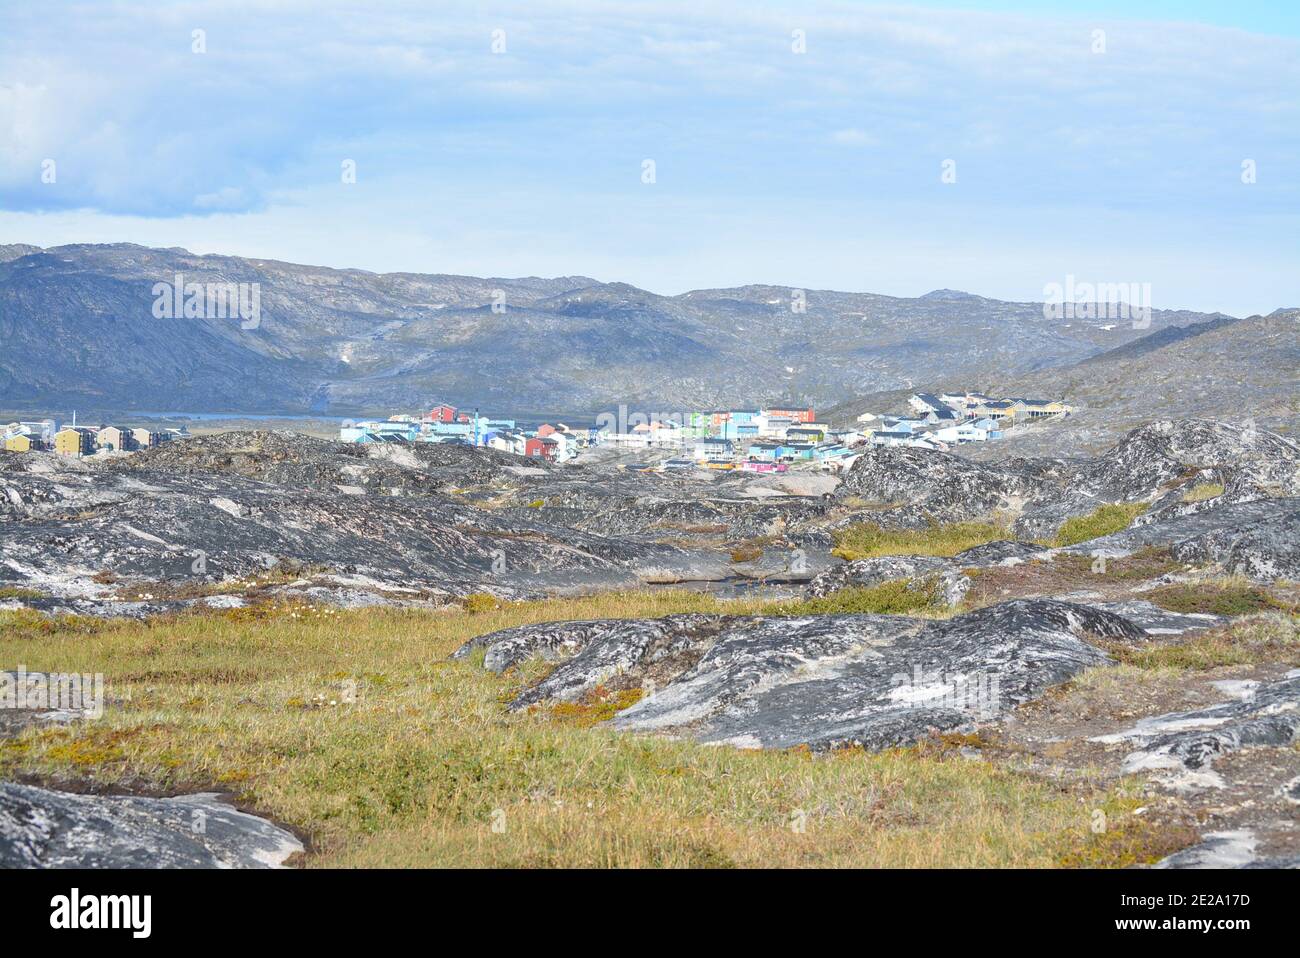 Ilulissat, Grönland, Juli - wunderschöne Gemeinde mit bunten Häusern mitten im Nirgendwo - traumhafte Landschaft in der grönländischen Tundra Stockfoto